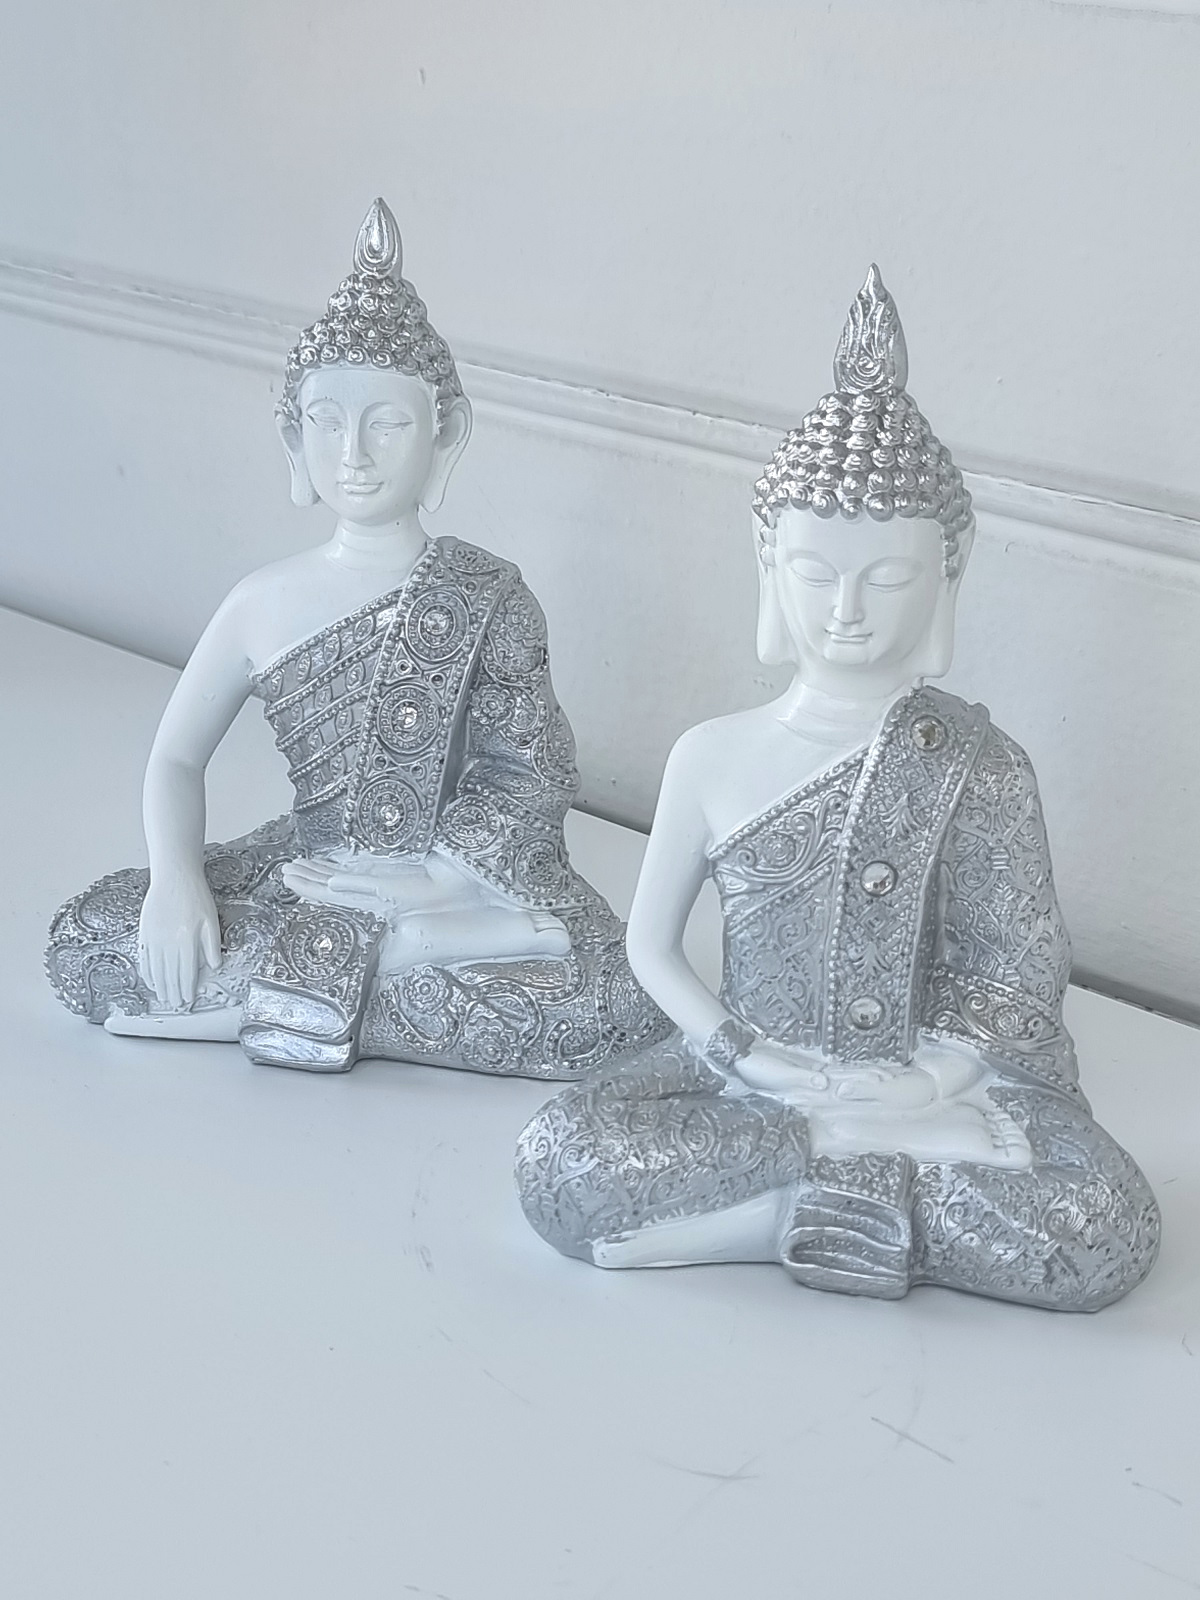 Sittande vit buddha figur. Besök blickfång.se